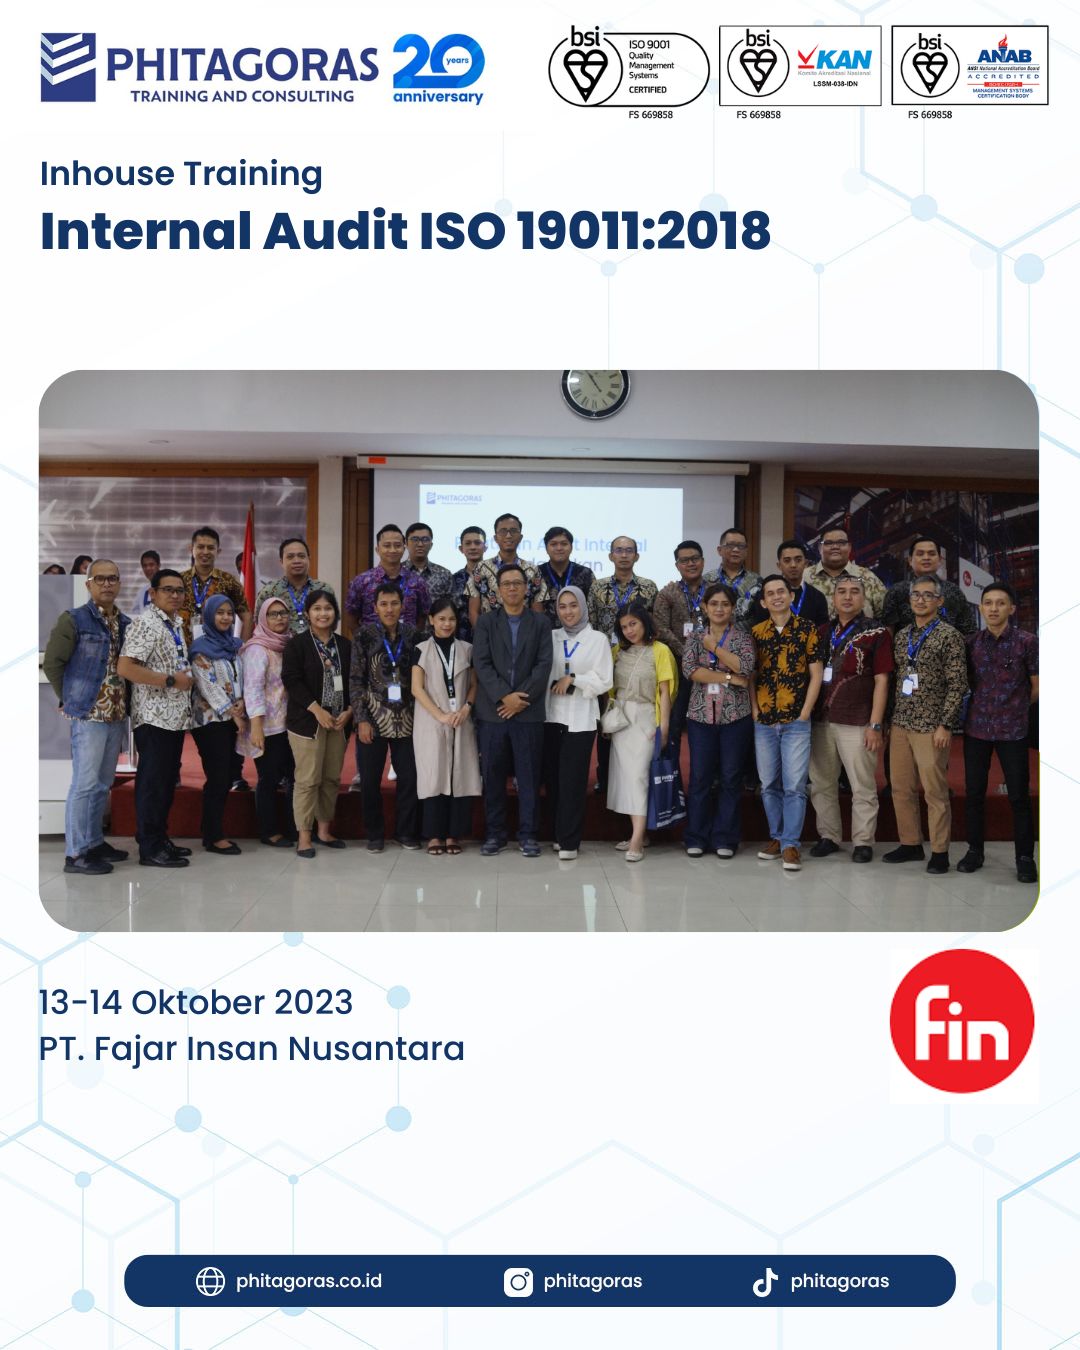 Inhouse Training Internal Audit ISO 190112018 - PT. Fajar Insan Nusantara